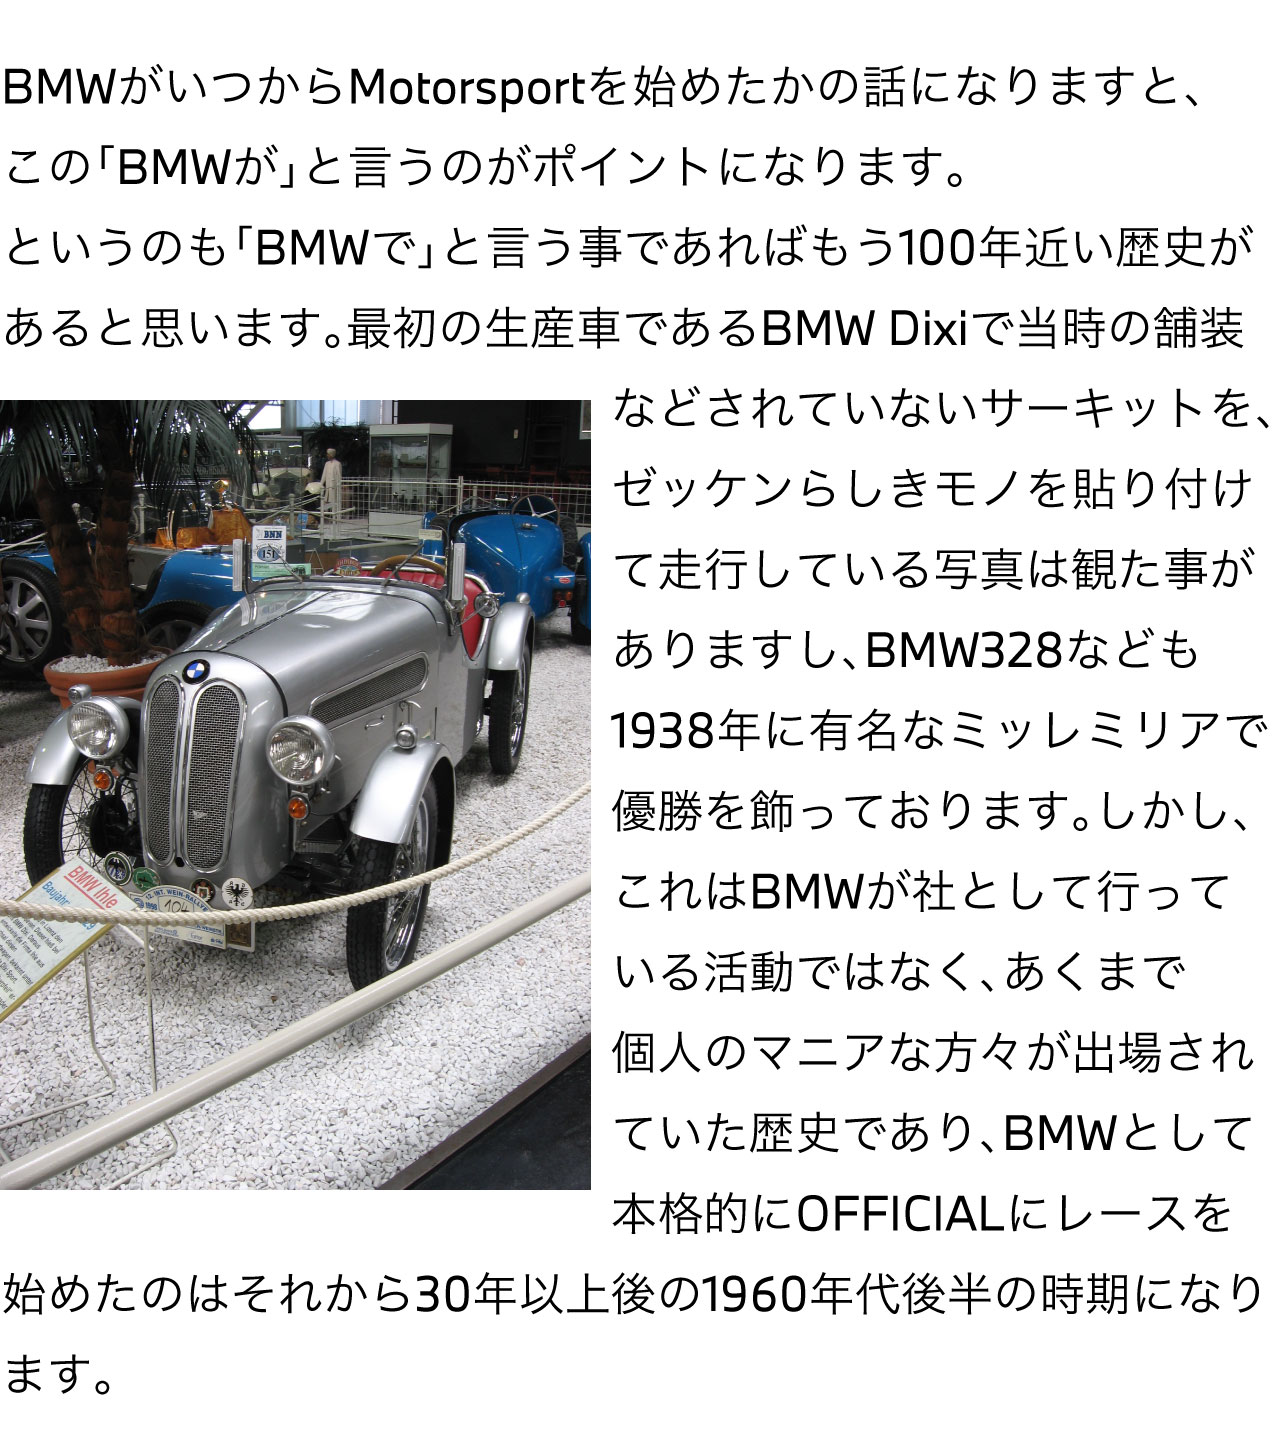 BMW がいつから Motorsport を始めたかの話になりますと、この「BMWが」と言うのがポイントになります。というのも「BMWで」と言う事であればもう100年近い歴史があると思います。最初の生産車であるBMW Dixi で当時の舗装などされていないサーキットを、ゼッケンらしきモノを貼り付けて走行している写真は観た事がありますし、BMW328 なども1938年に有名なミッレミリアで優勝を飾っております。しかし、これはBMWが社として行っている活動ではなく、あくまで個人のマニアな方々が出場されていた歴史であり、BMWとして本格的にOFFICIALにレースを始めたのはそれから30年以上後の1960年代後半の時期になります。